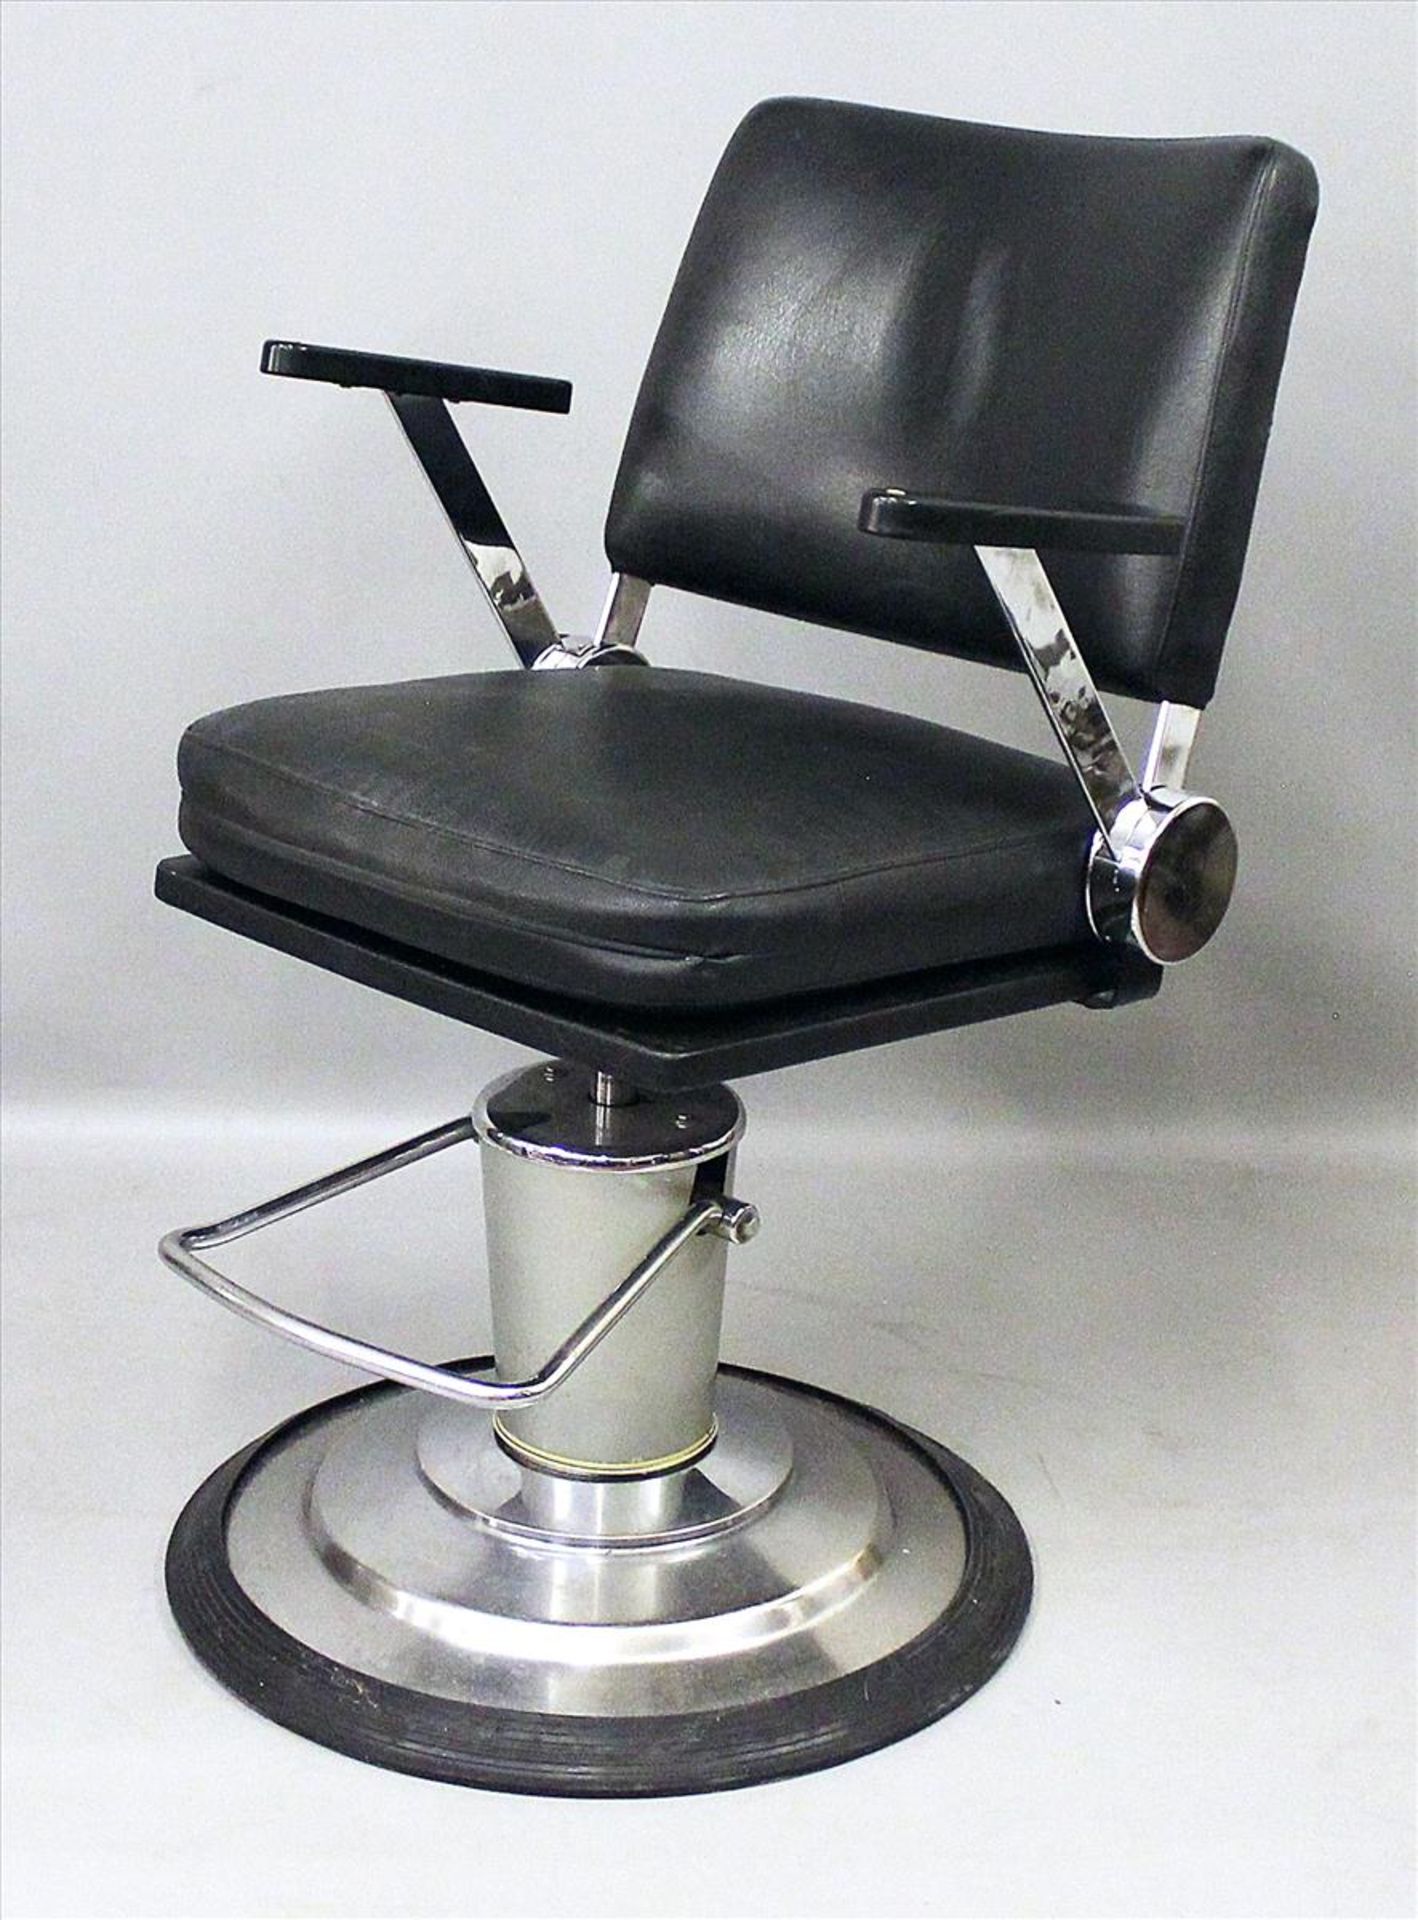 Frisierstuhl im Vintage-Industriedesign.Dreh- und höhenverstellbares Metallgestell auf rundem Stand,